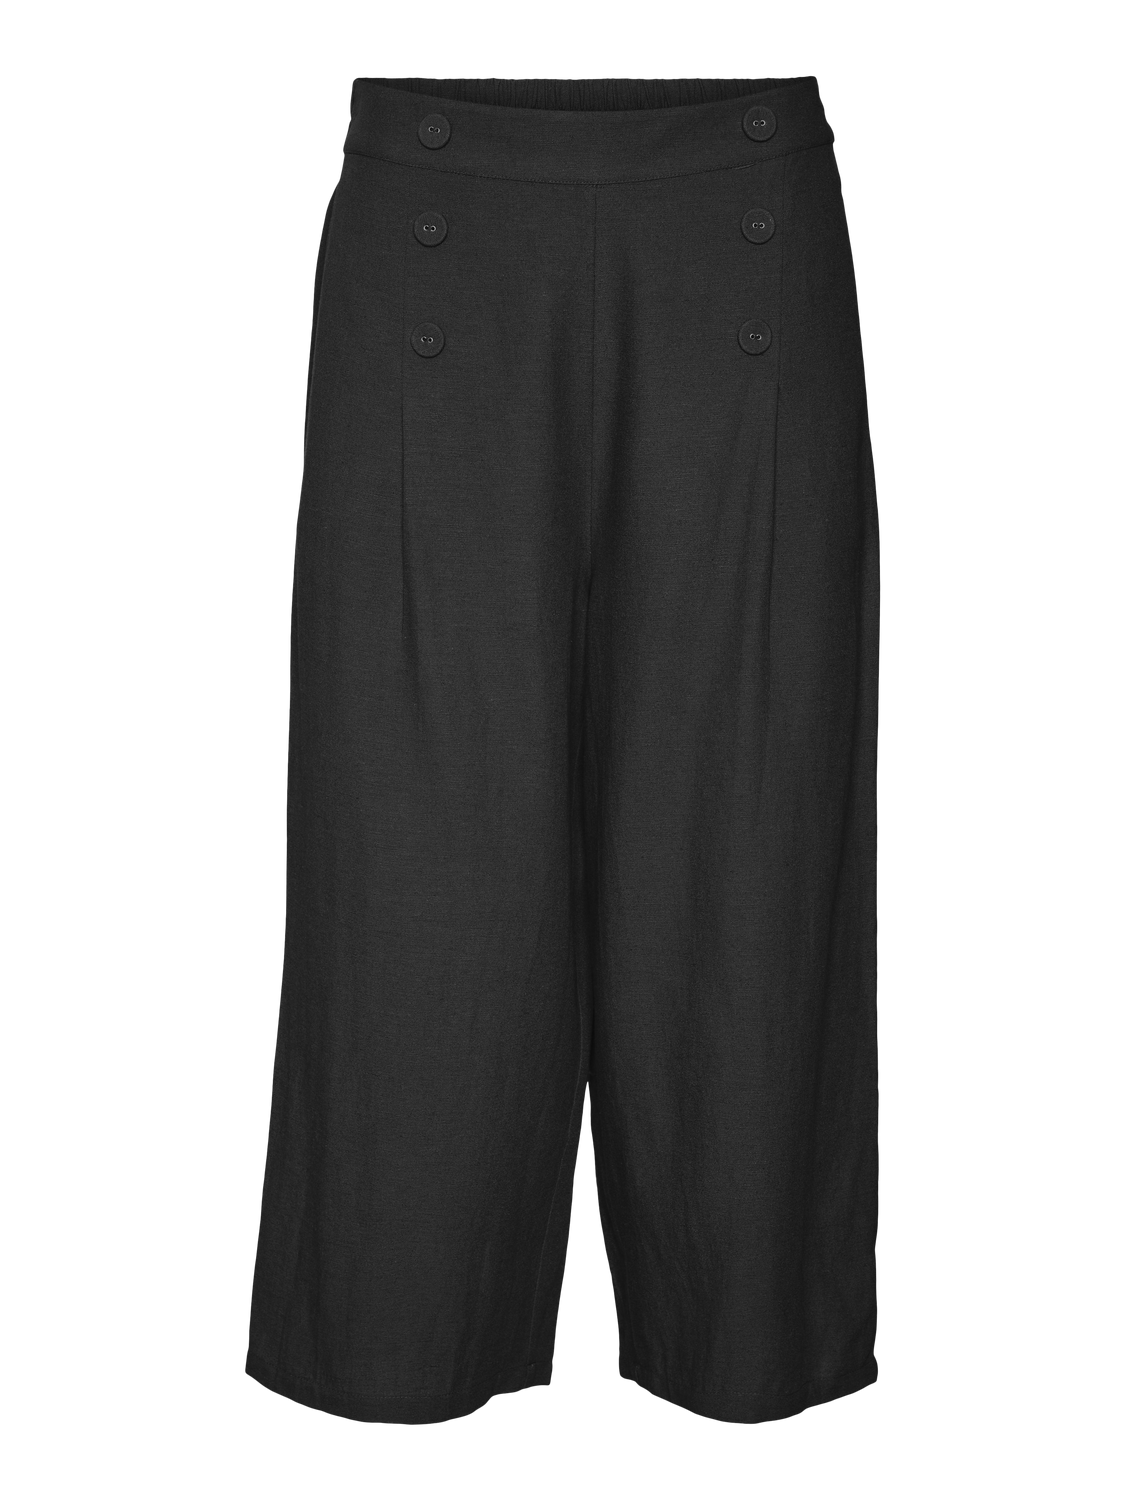 Vero Moda VMGISELLE Spodnie -Black - 10317814